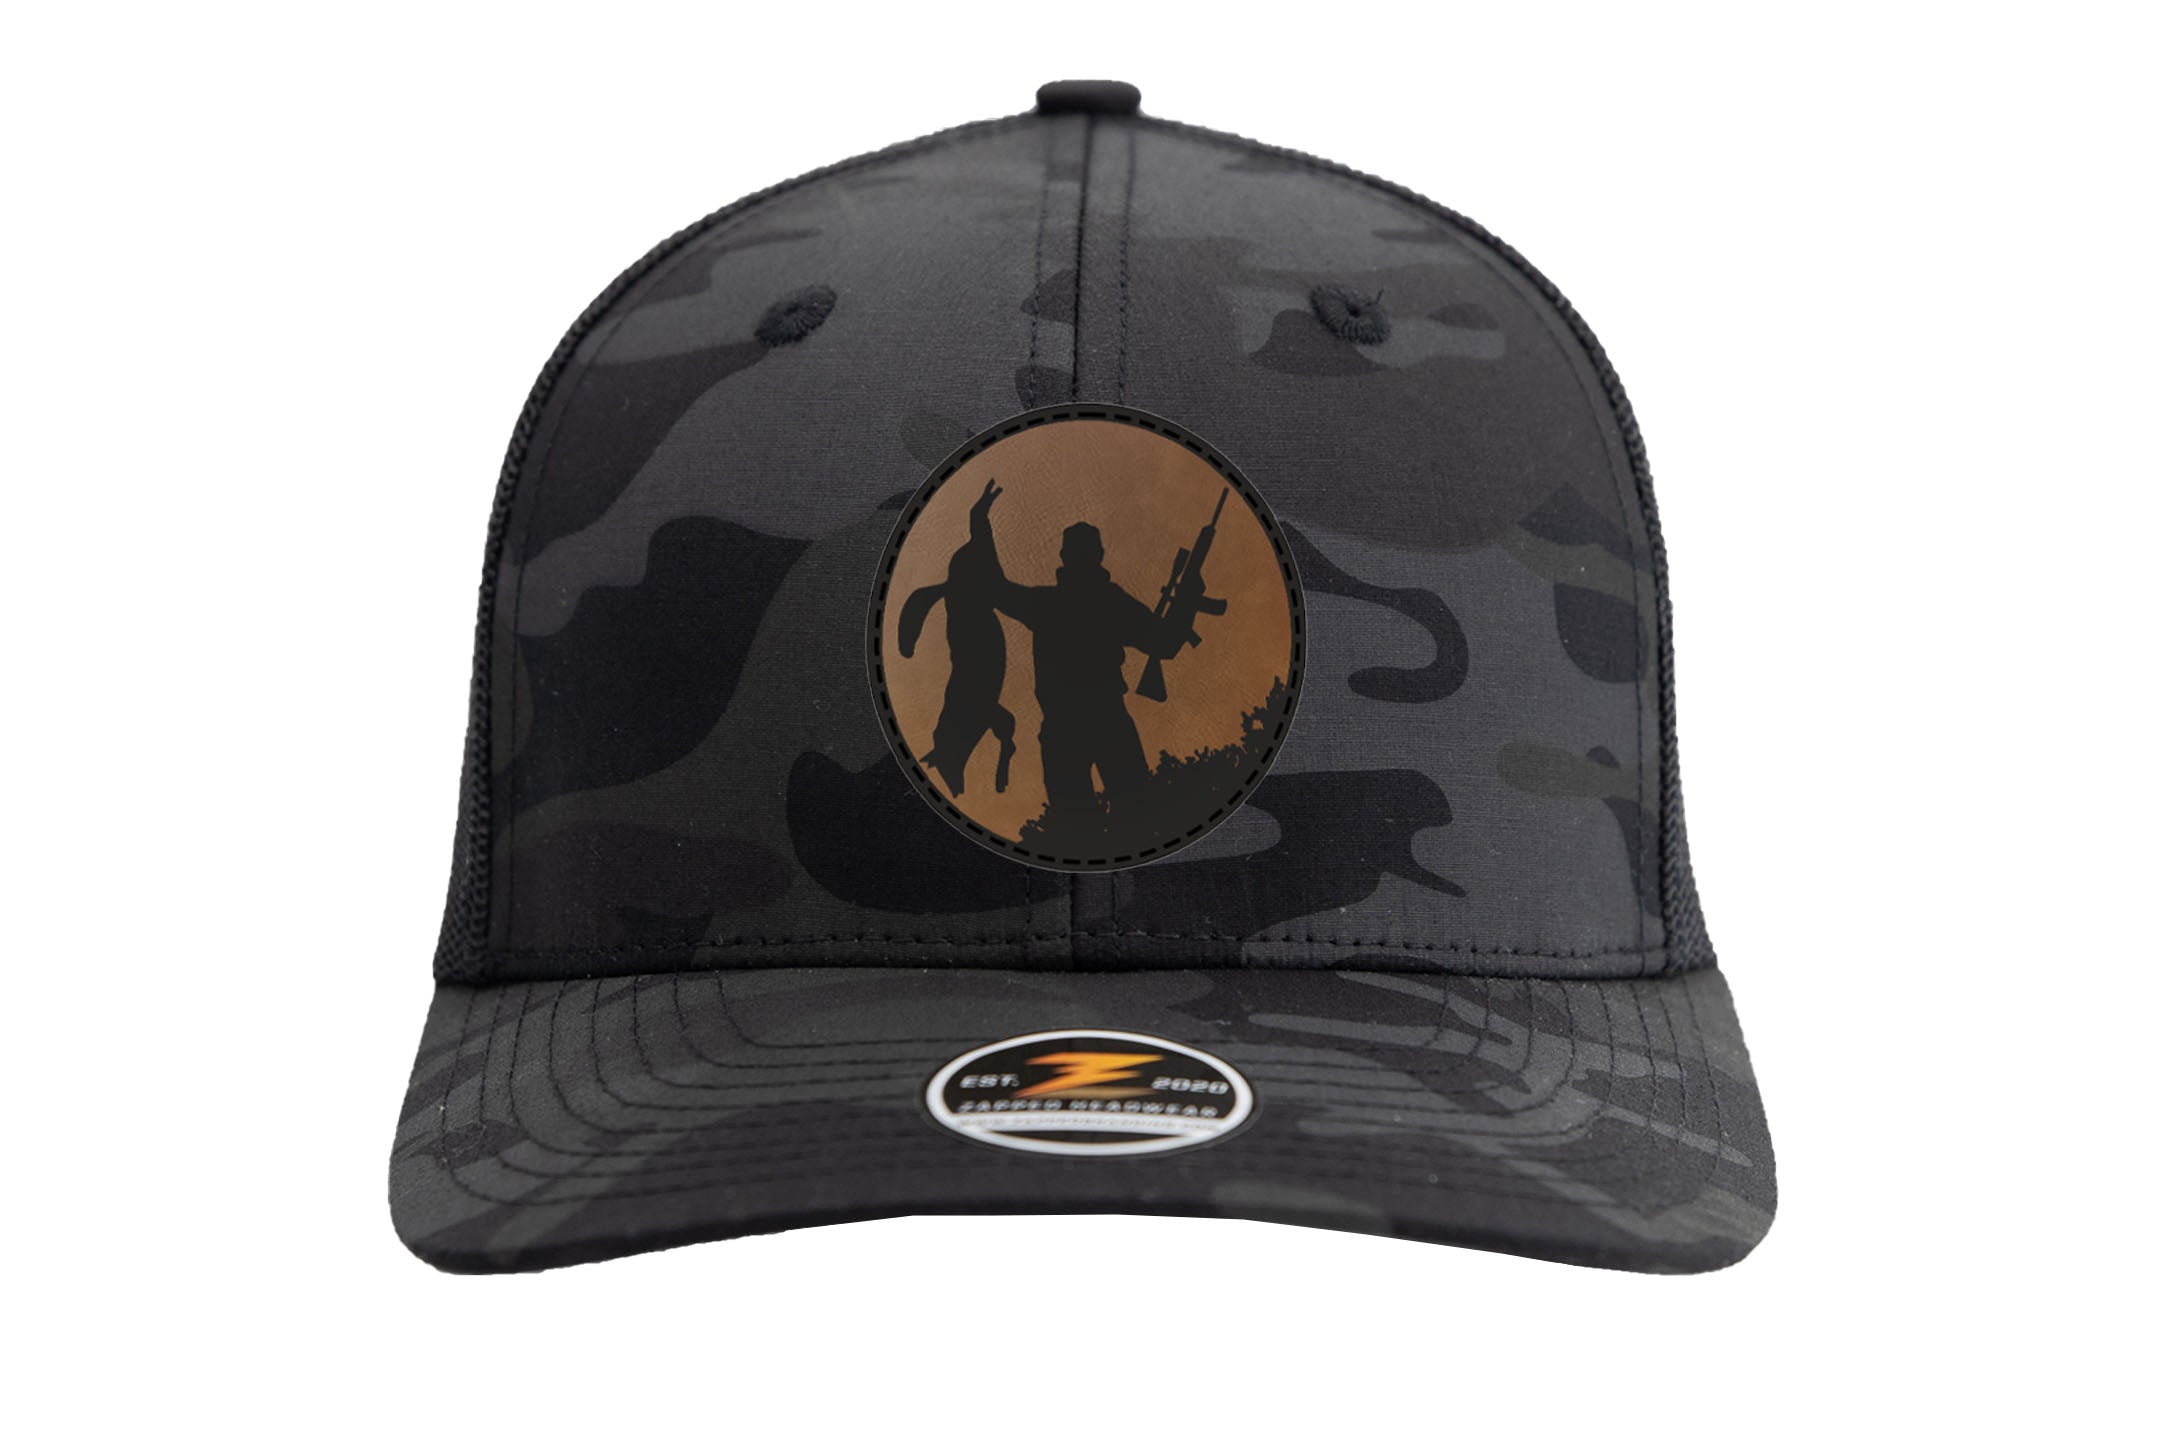 Sombrero de caza Zapped Coyote